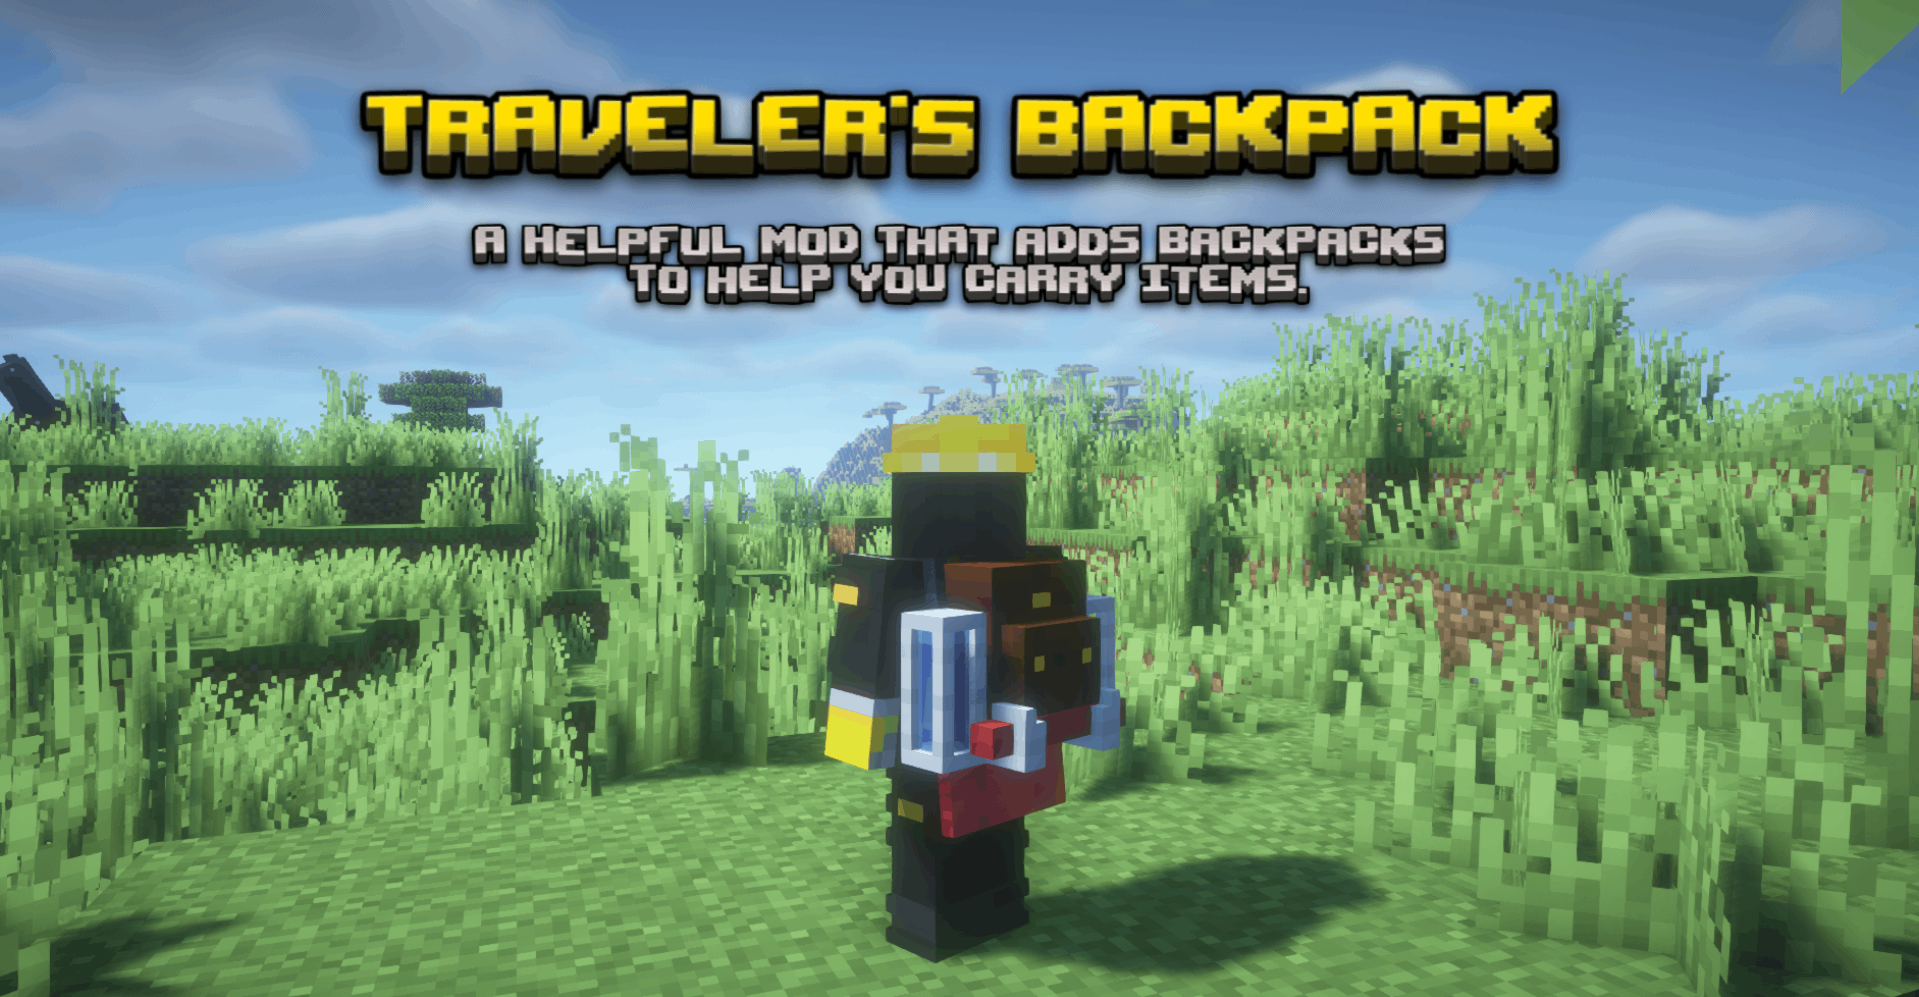 TRAVELER'S BACKPACK